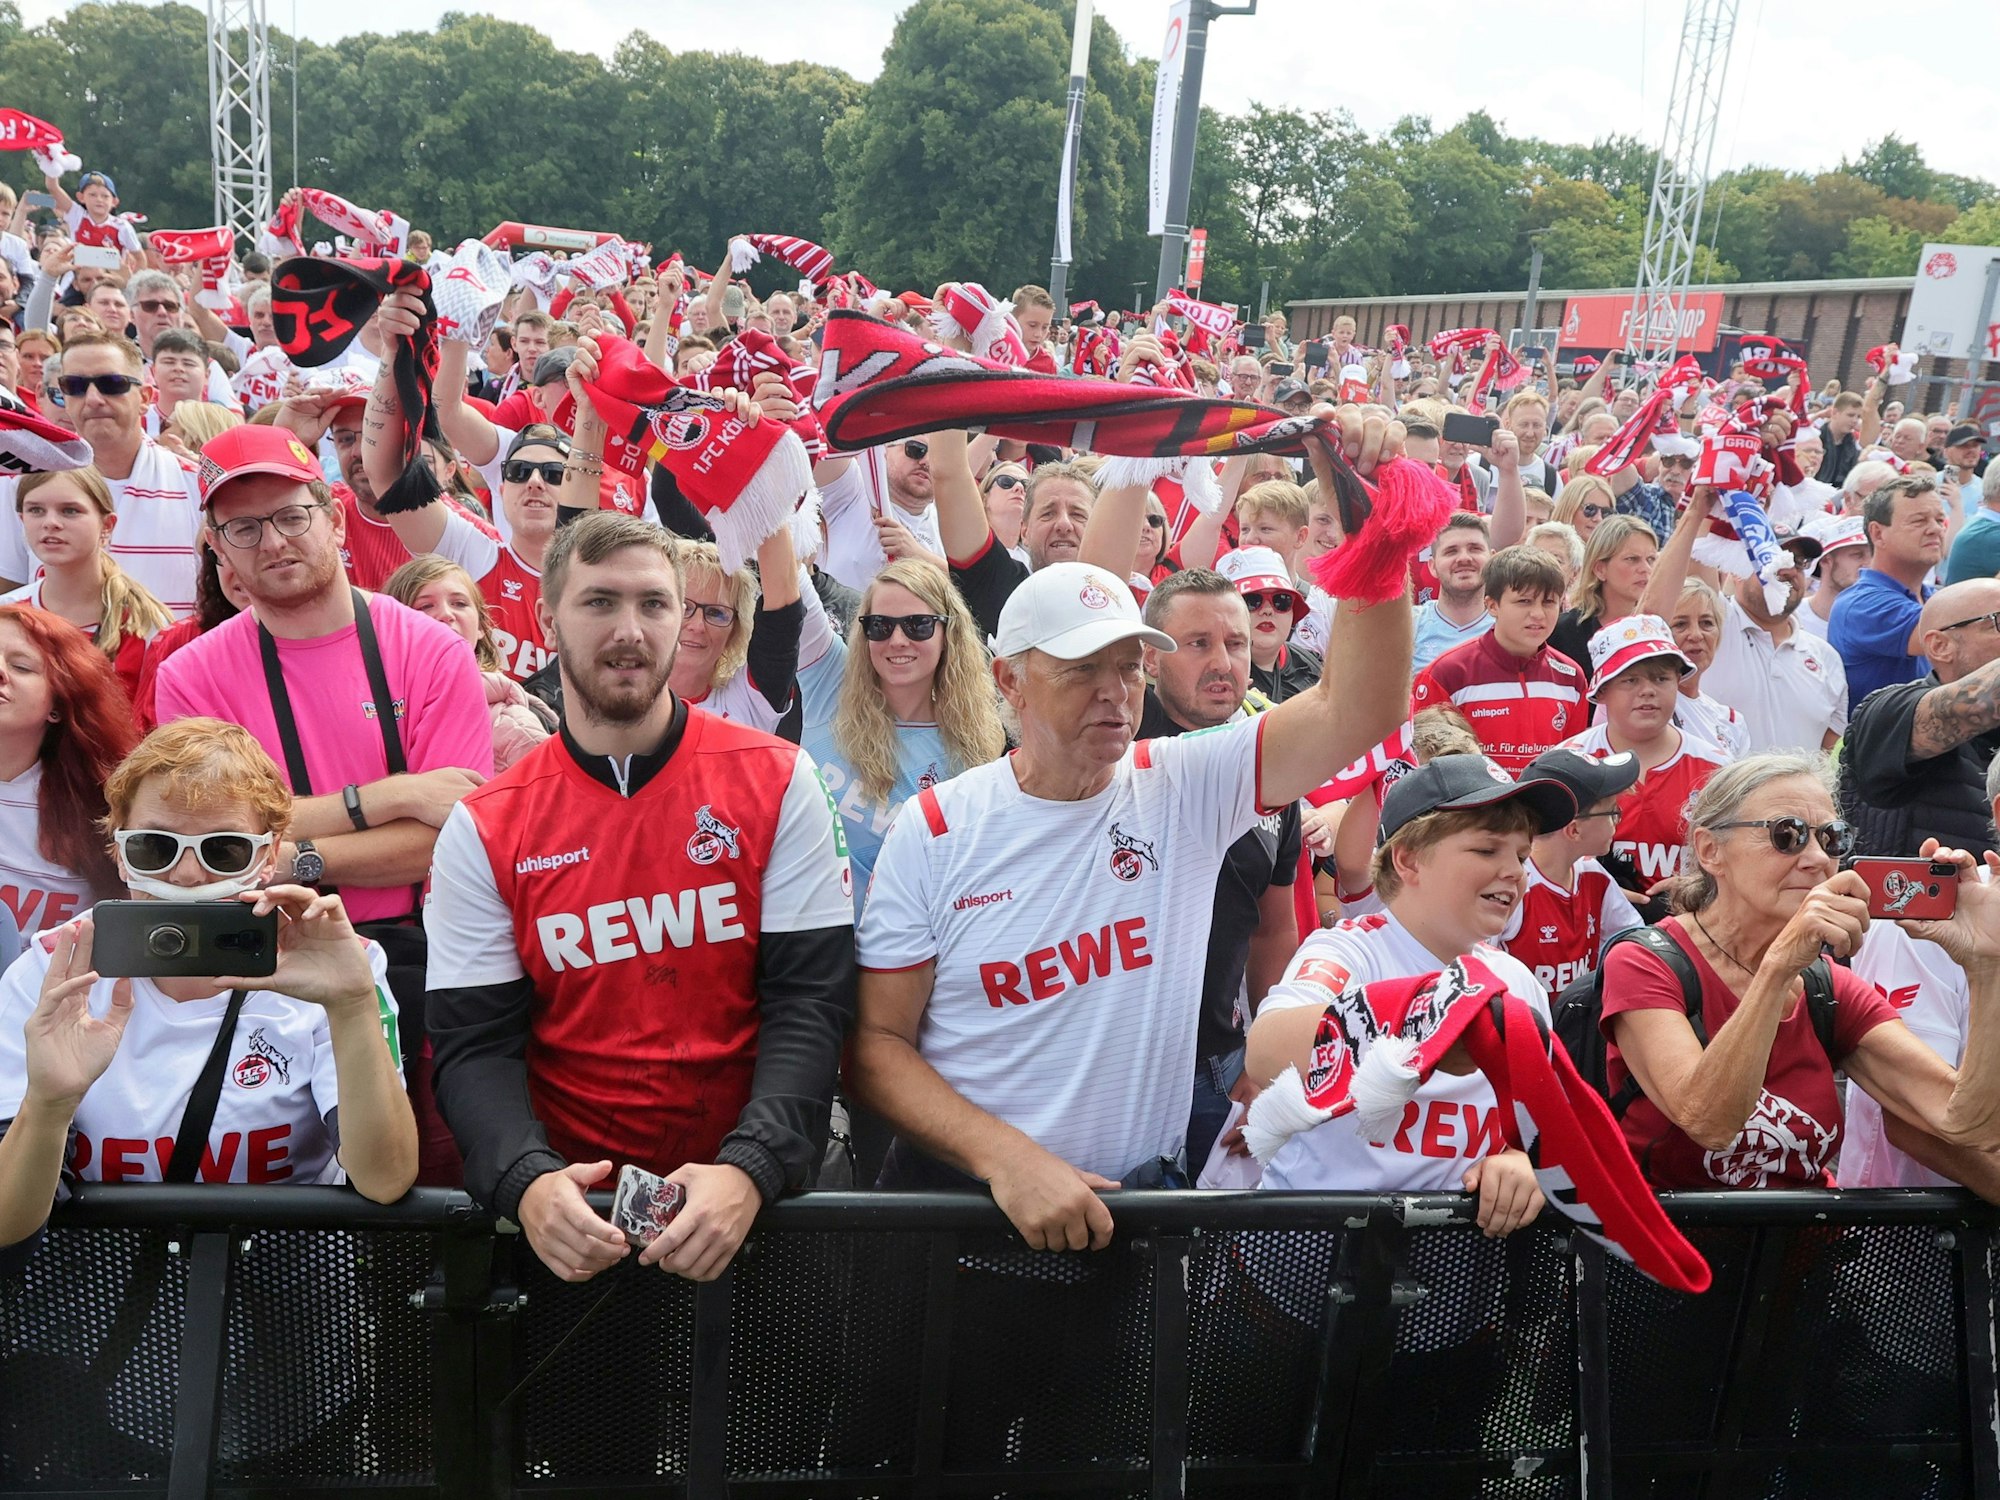 Die Fans feiern ihre Mannschaft vor der Bühne am Rhein-Energie-Stadion.










